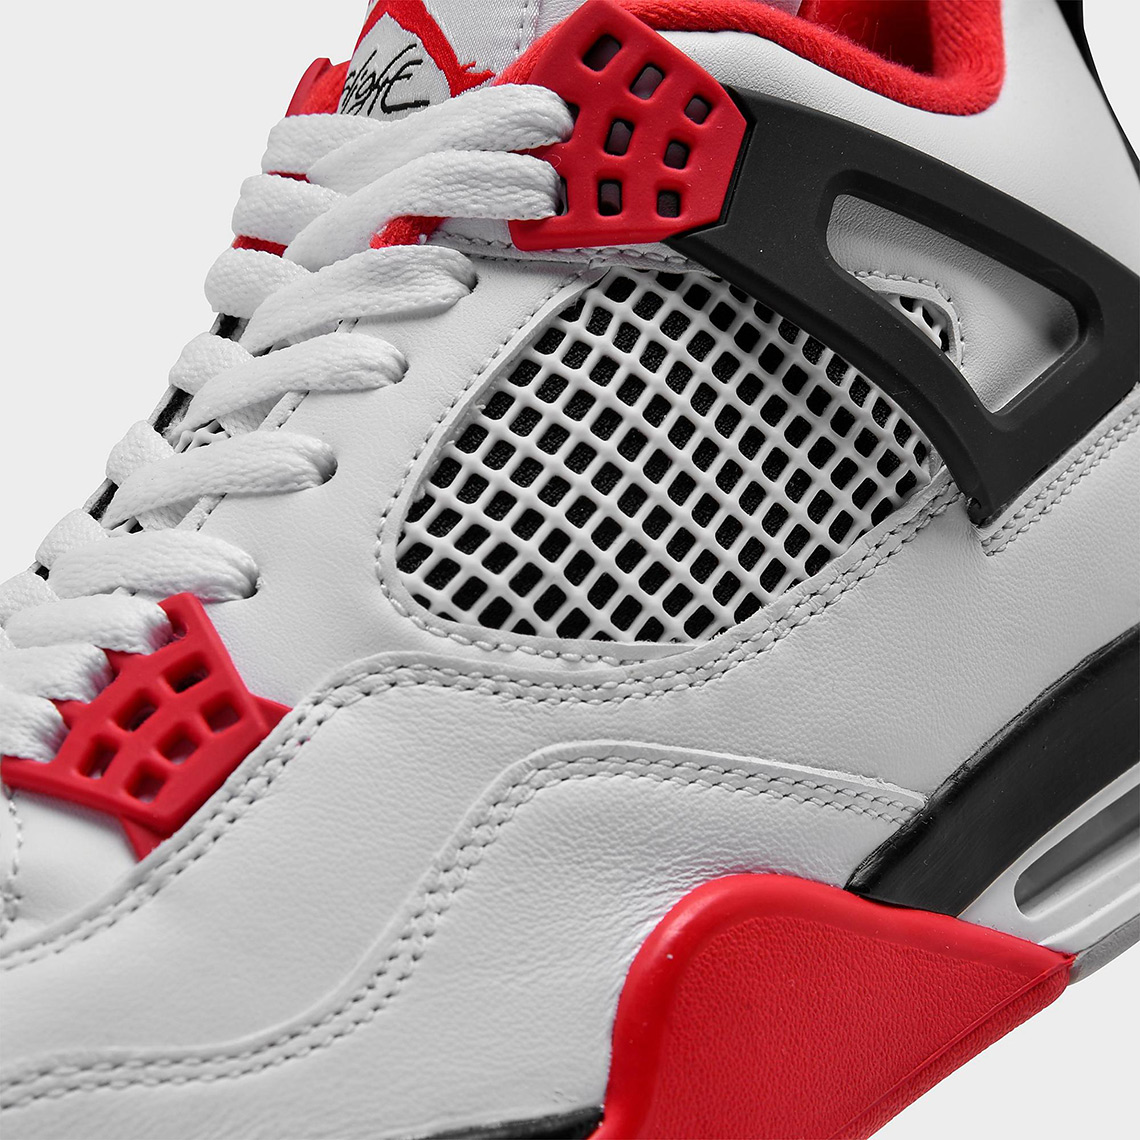 OFF-WHITE Air Jordan 1 Chicago Release Date - Sneaker Bar Detroit